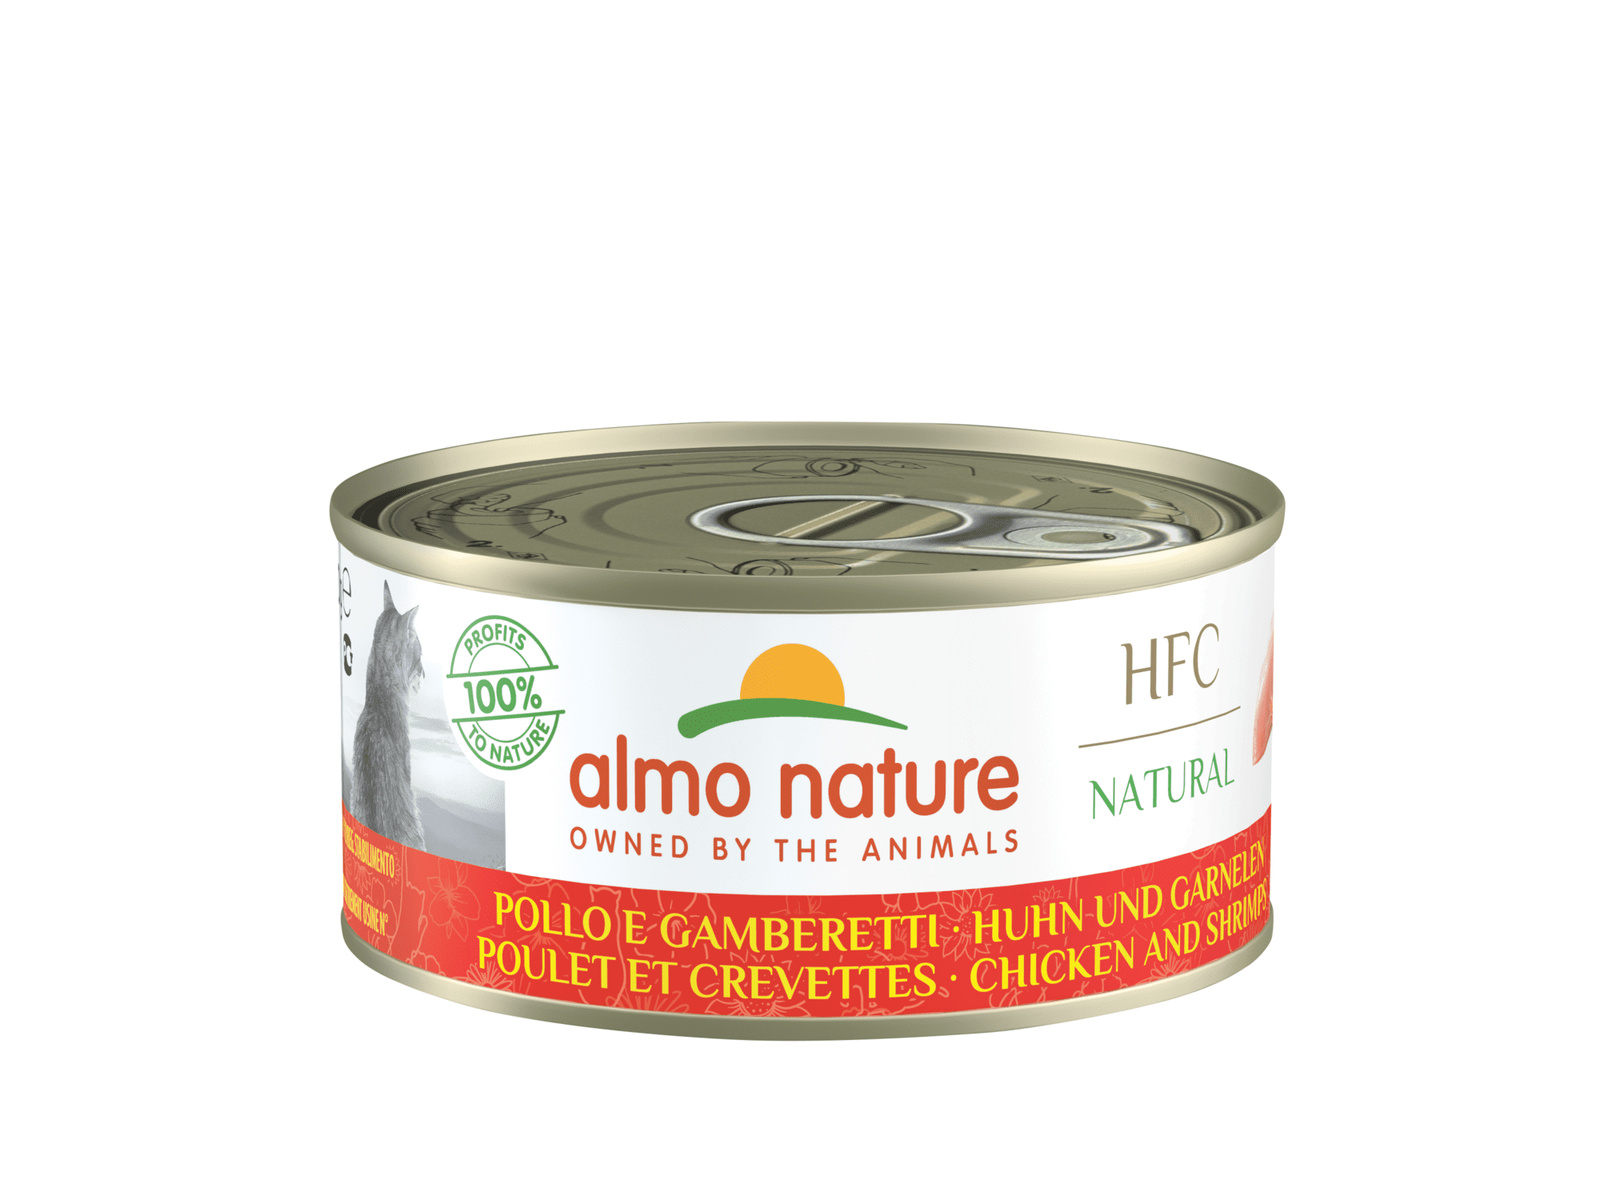 Almo Nature консервы Almo Nature консервы для кошек, с курицей и креветками, 55% мяса (24 шт. по 150 г)